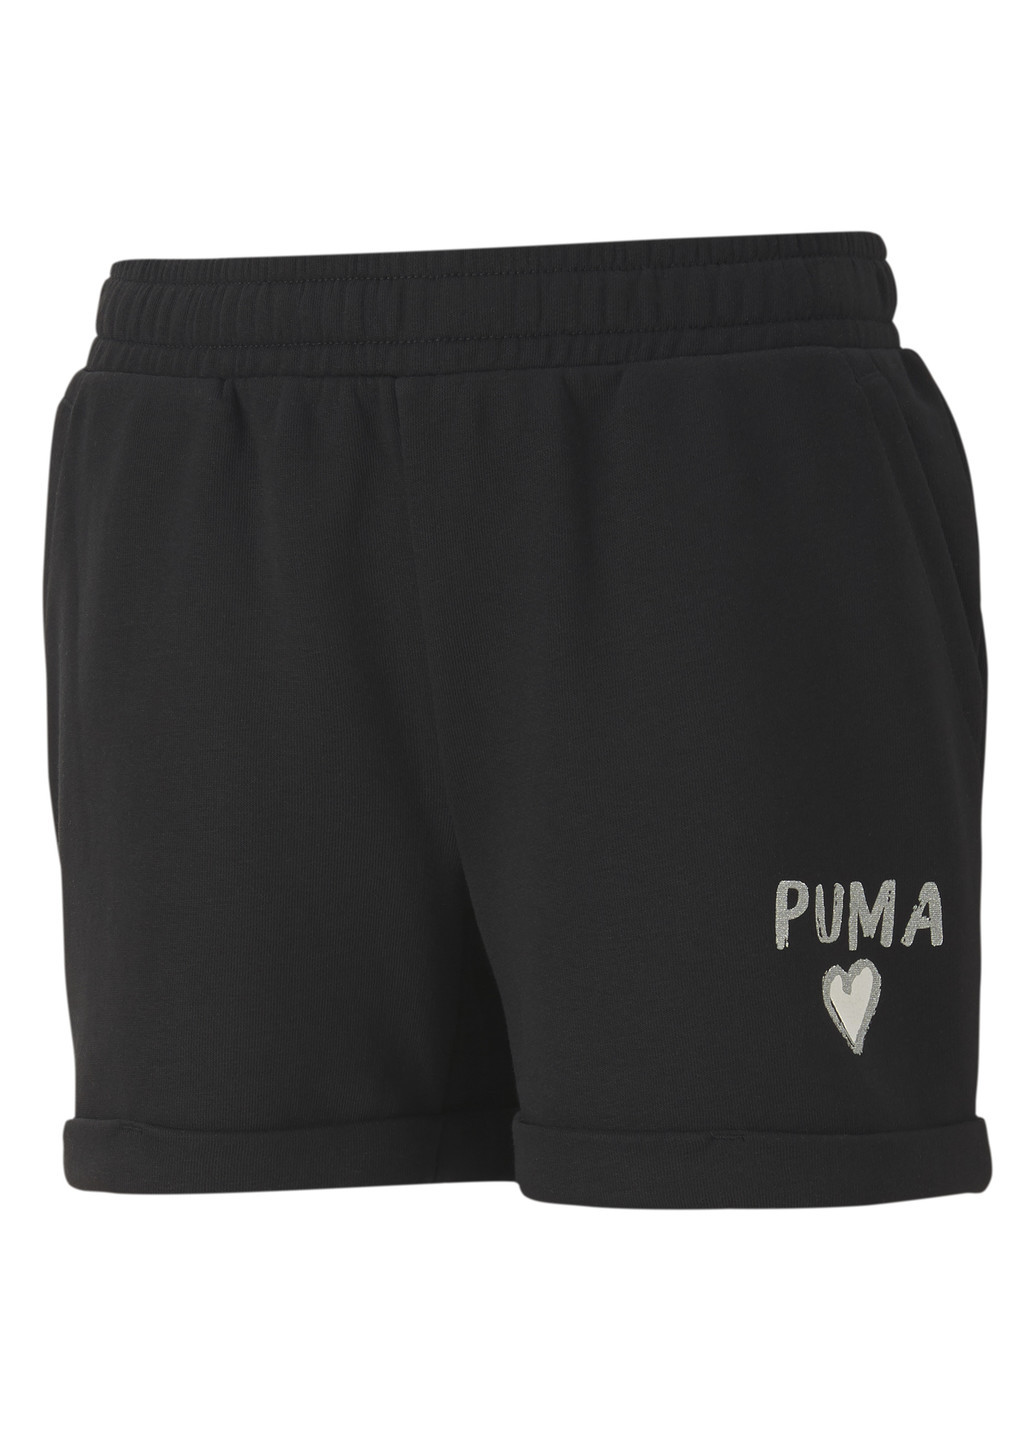 Детские шорты Alpha Shorts Puma чёрные спортивные